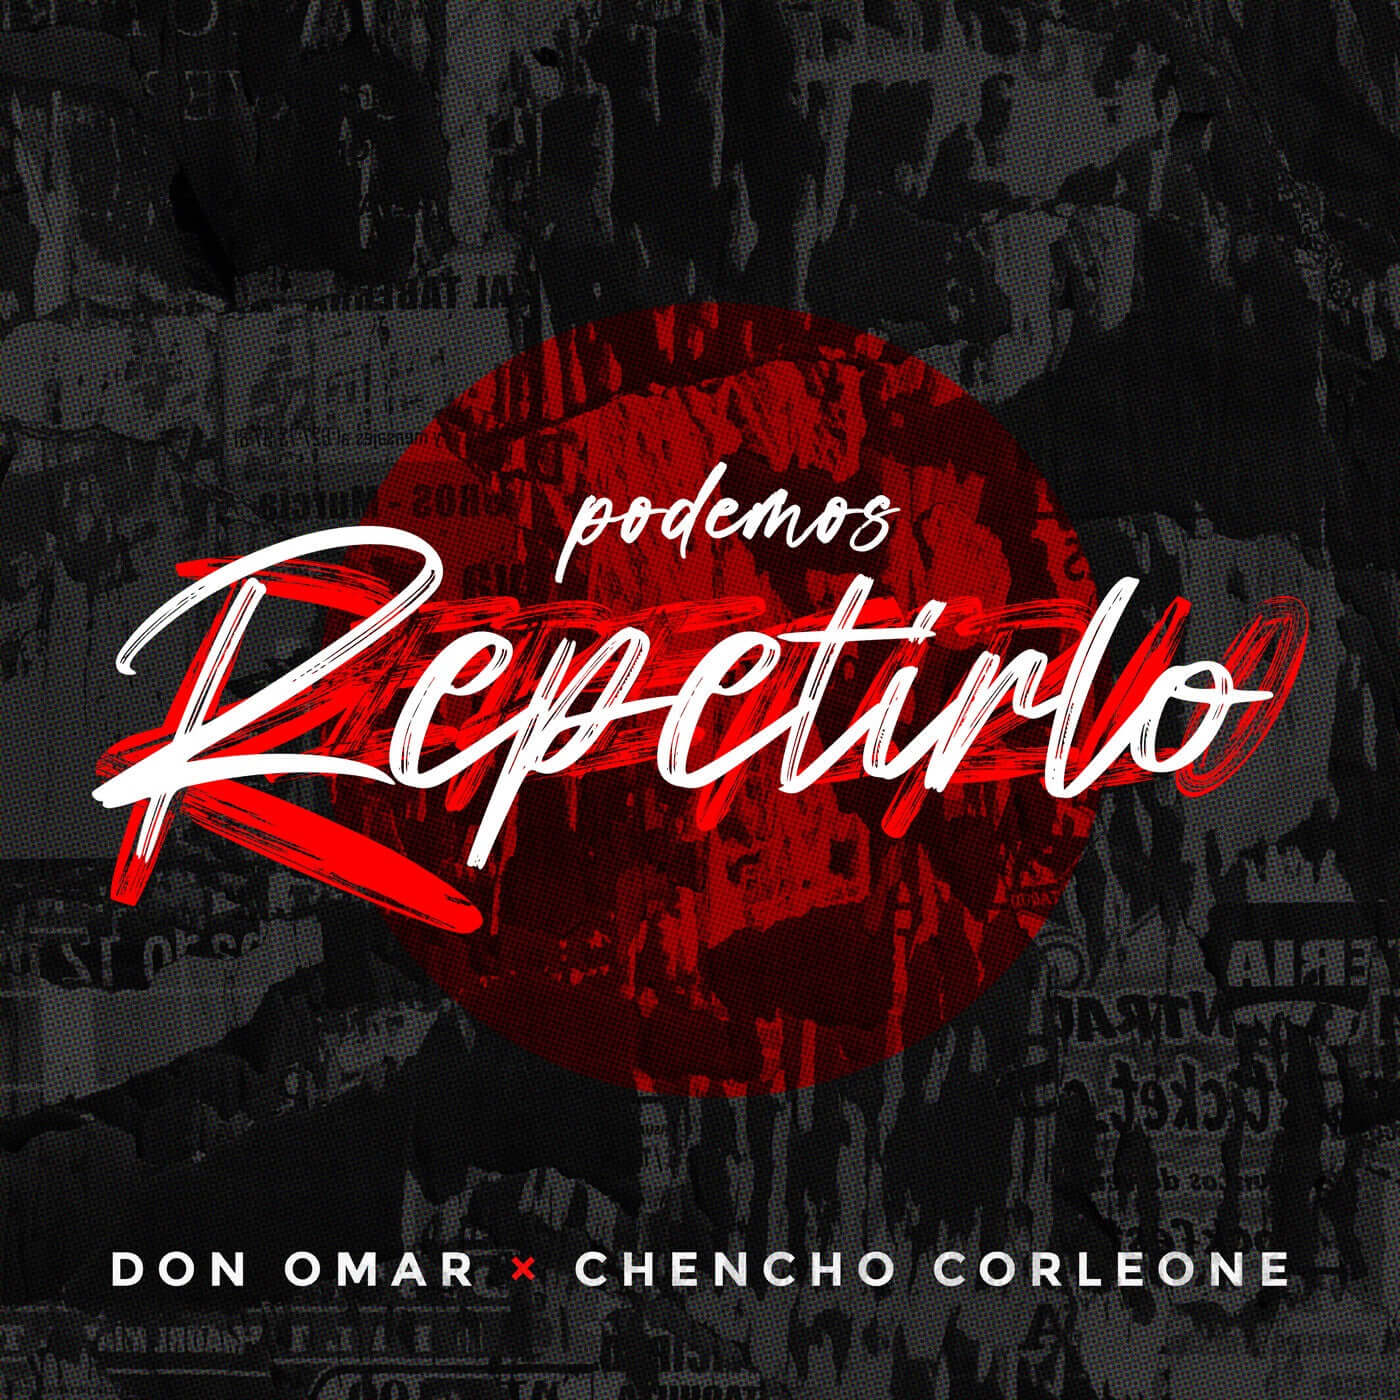 Don Omar, Chencho Corleone - Podemos Repetirlo (Studio Acapella)